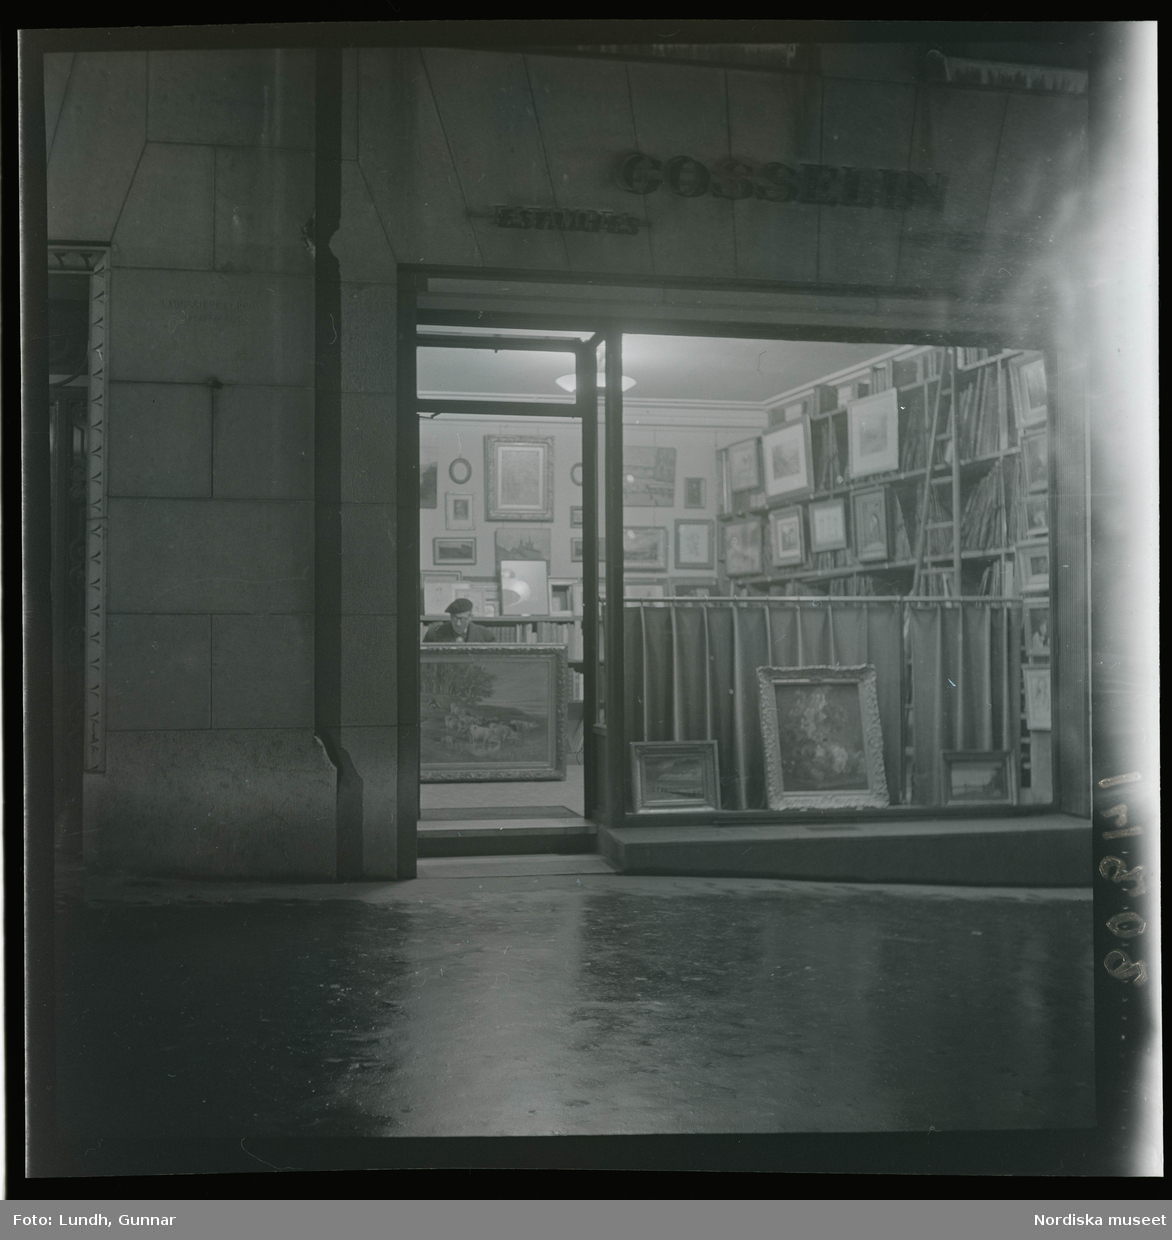 1950. Paris. En man sittter inne i en butik med konst, kväll